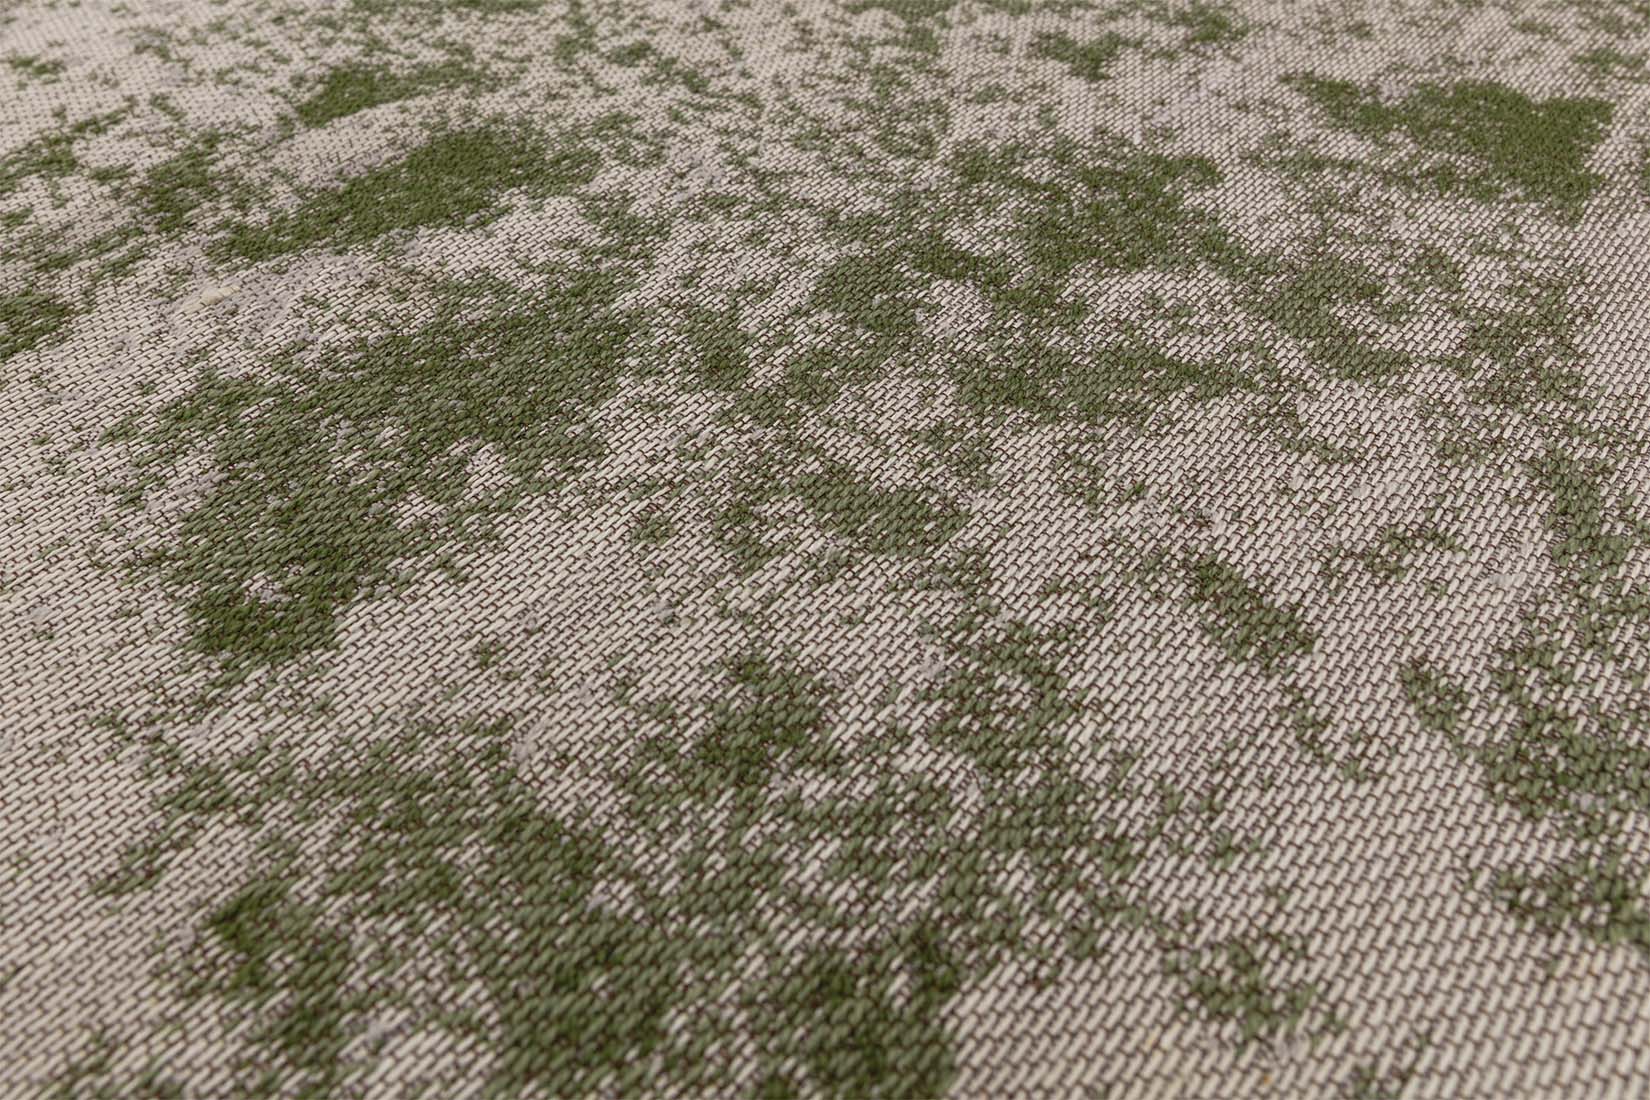 abstract indoor/outdoor rug in green
